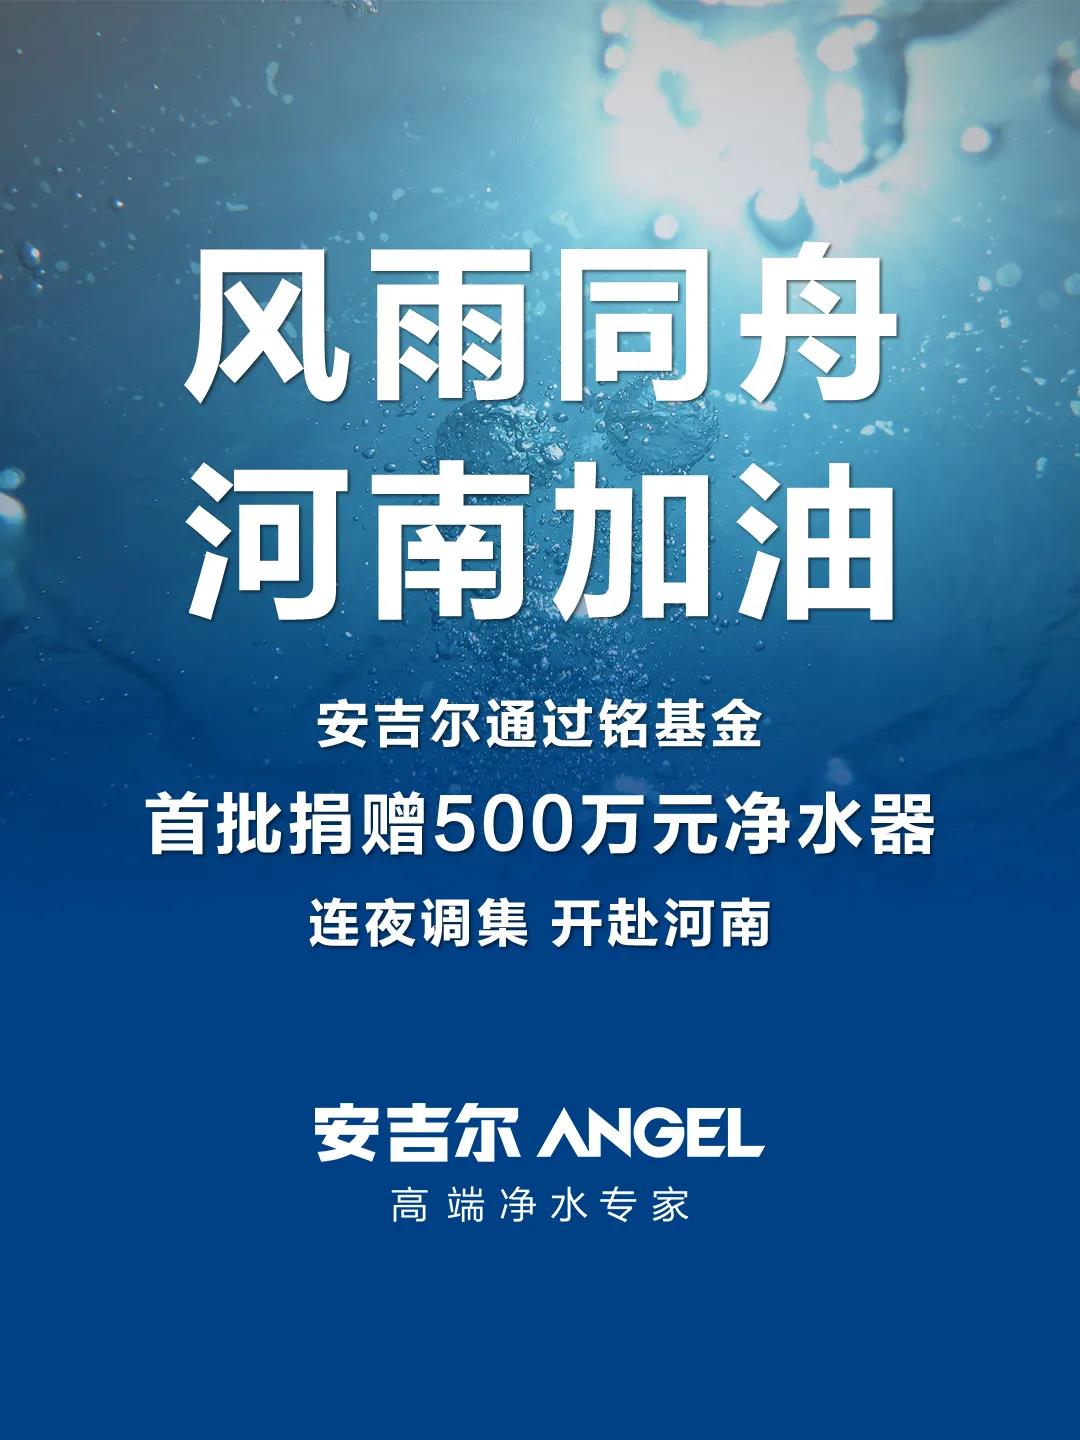 安吉尔集团宣布首批捐赠500万元净水器，援助河南防汛救灾工作.jpg